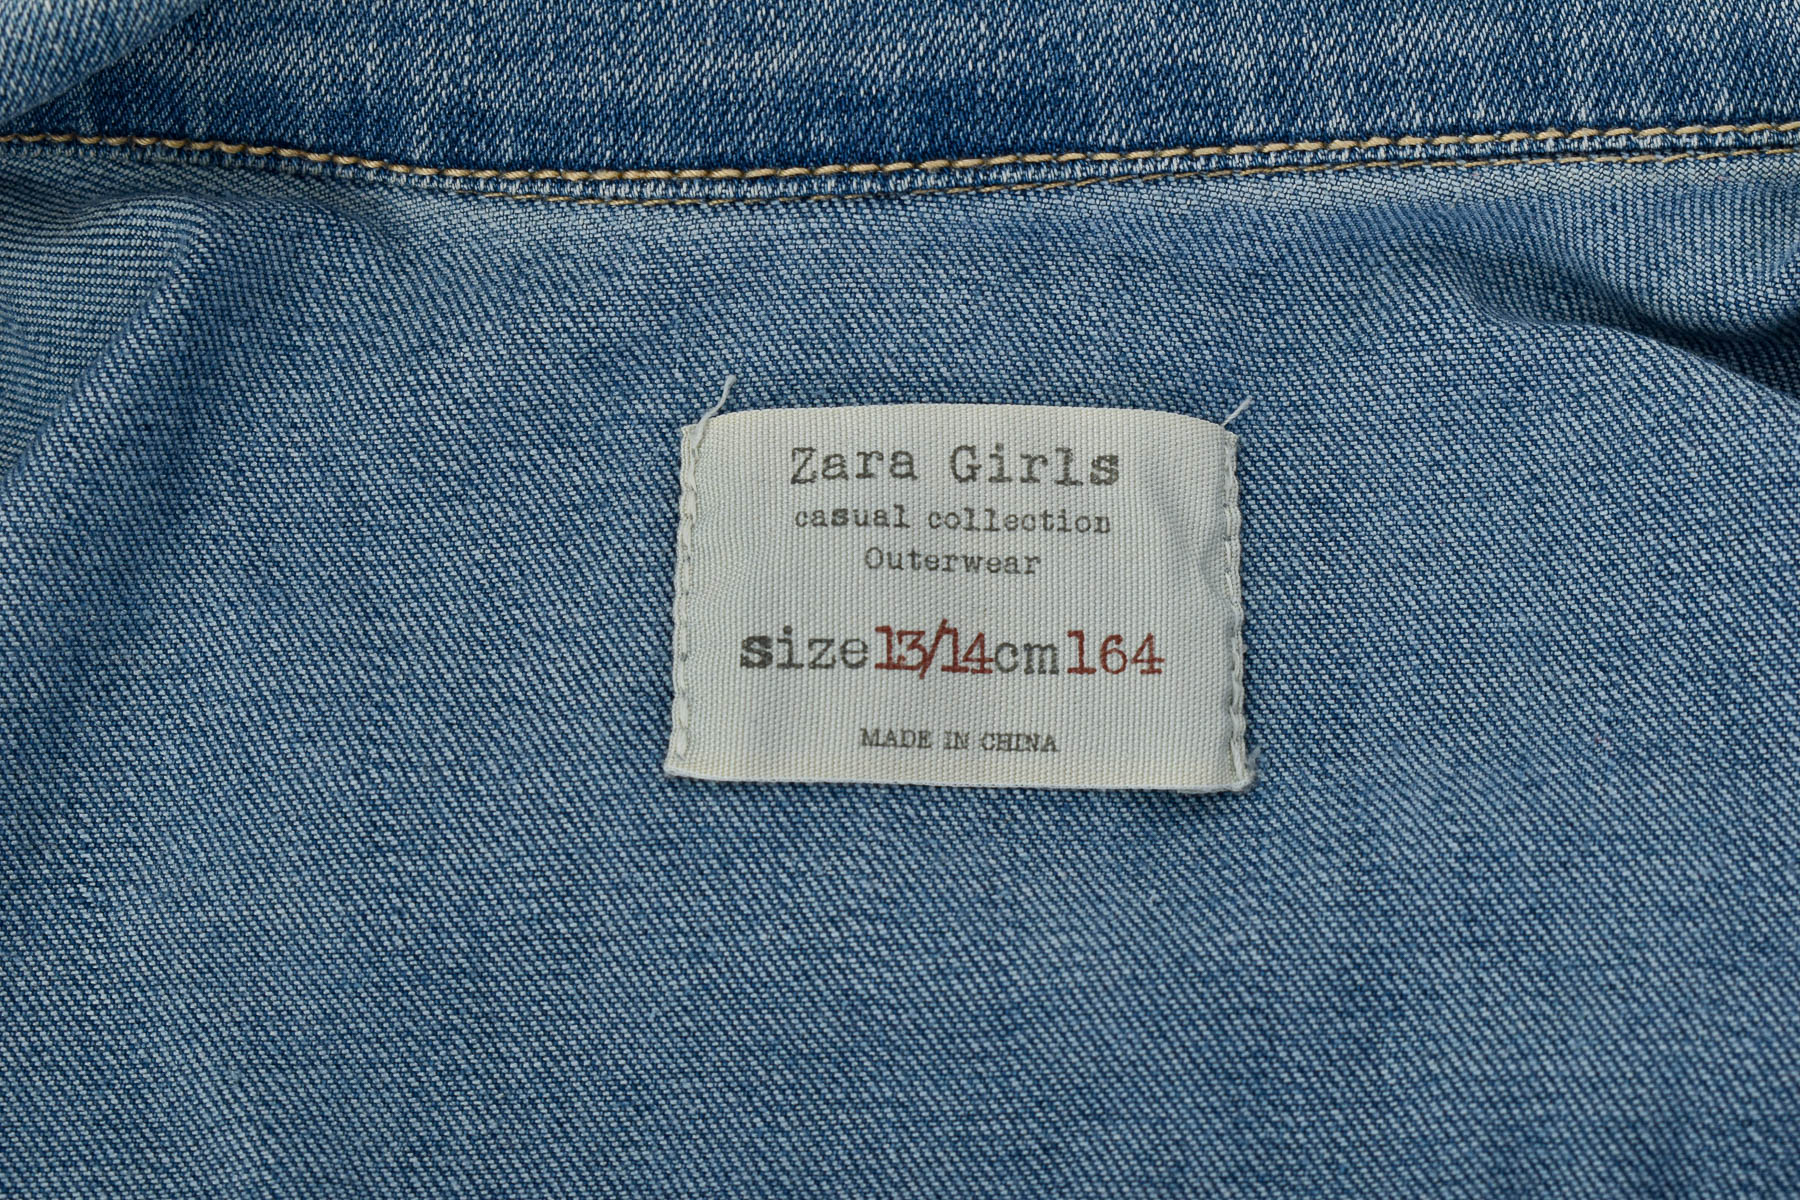 Vest for girl - ZARA Girls - 2